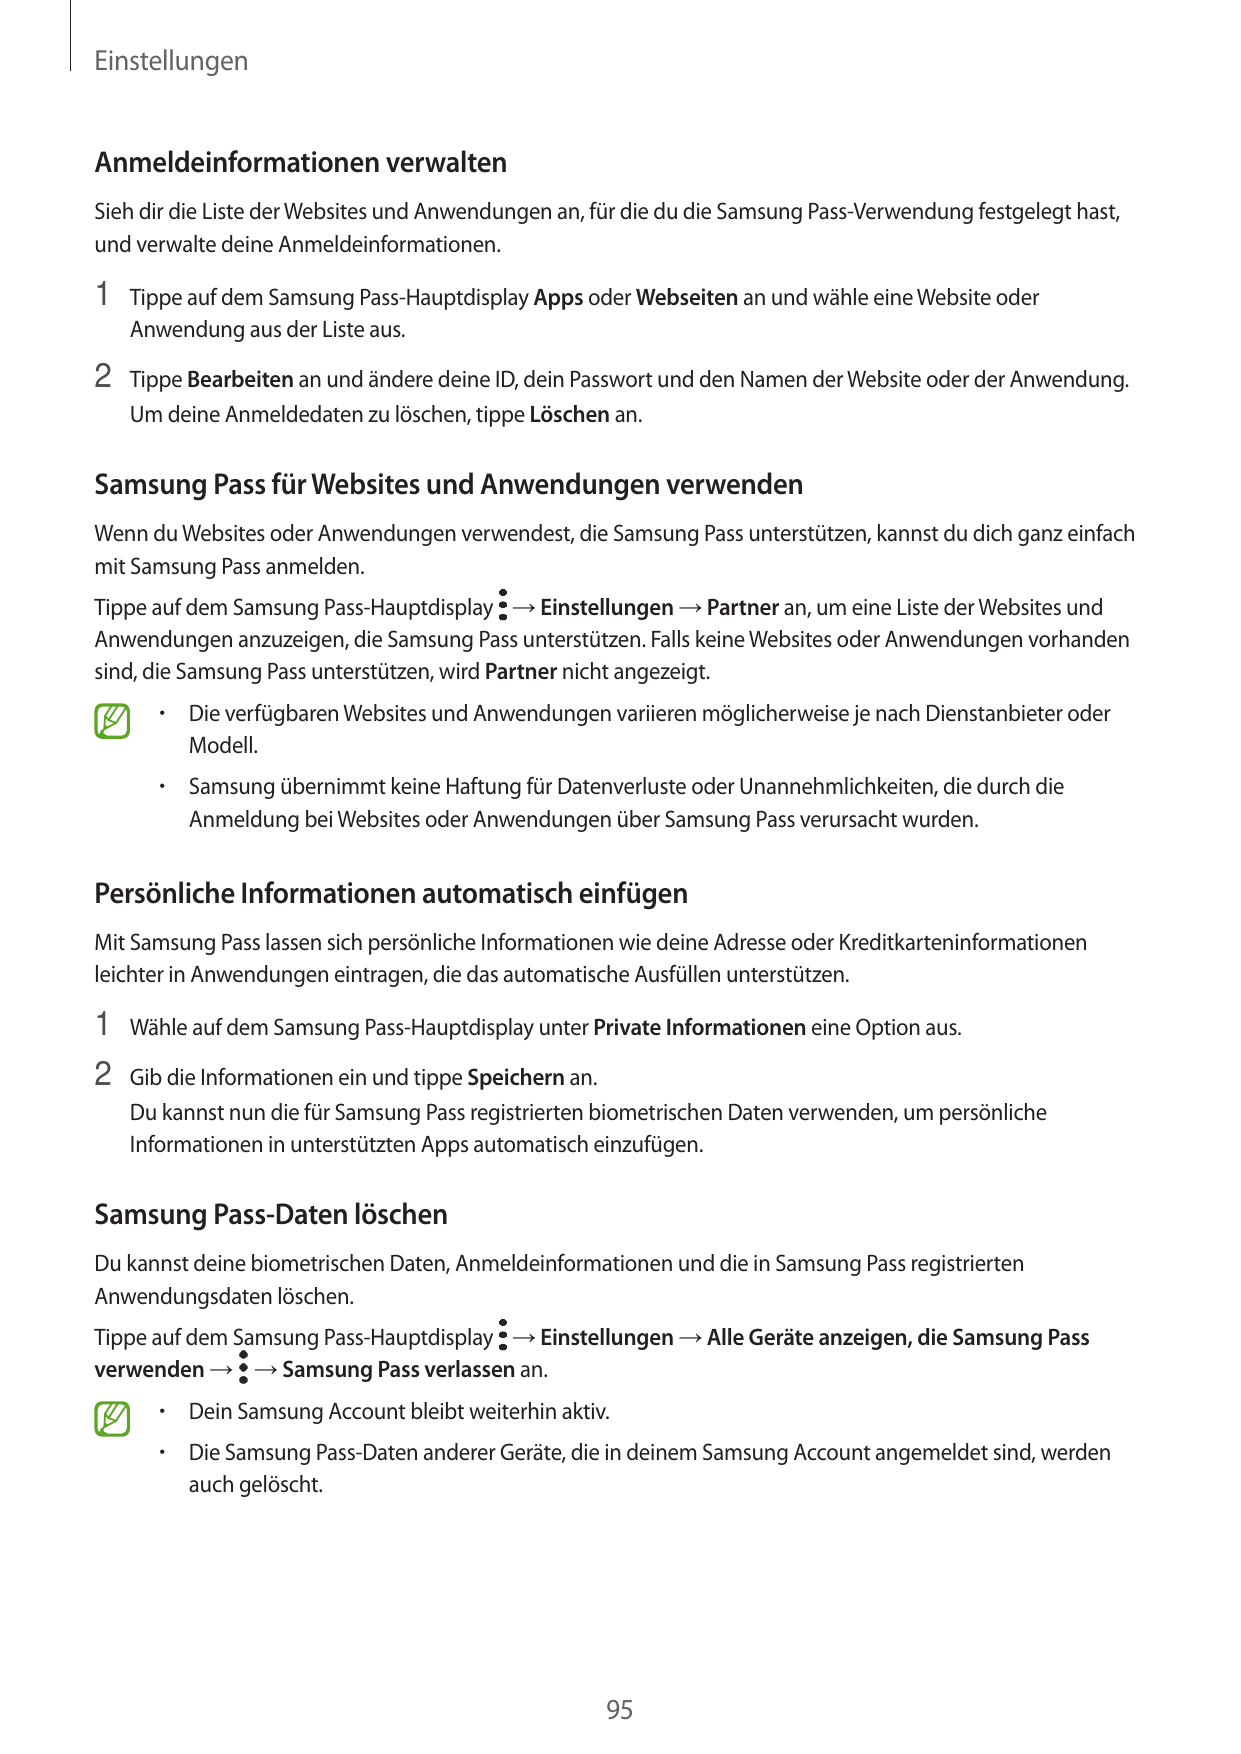 EinstellungenAnmeldeinformationen verwaltenSieh dir die Liste der Websites und Anwendungen an, für die du die Samsung Pass-Verwe